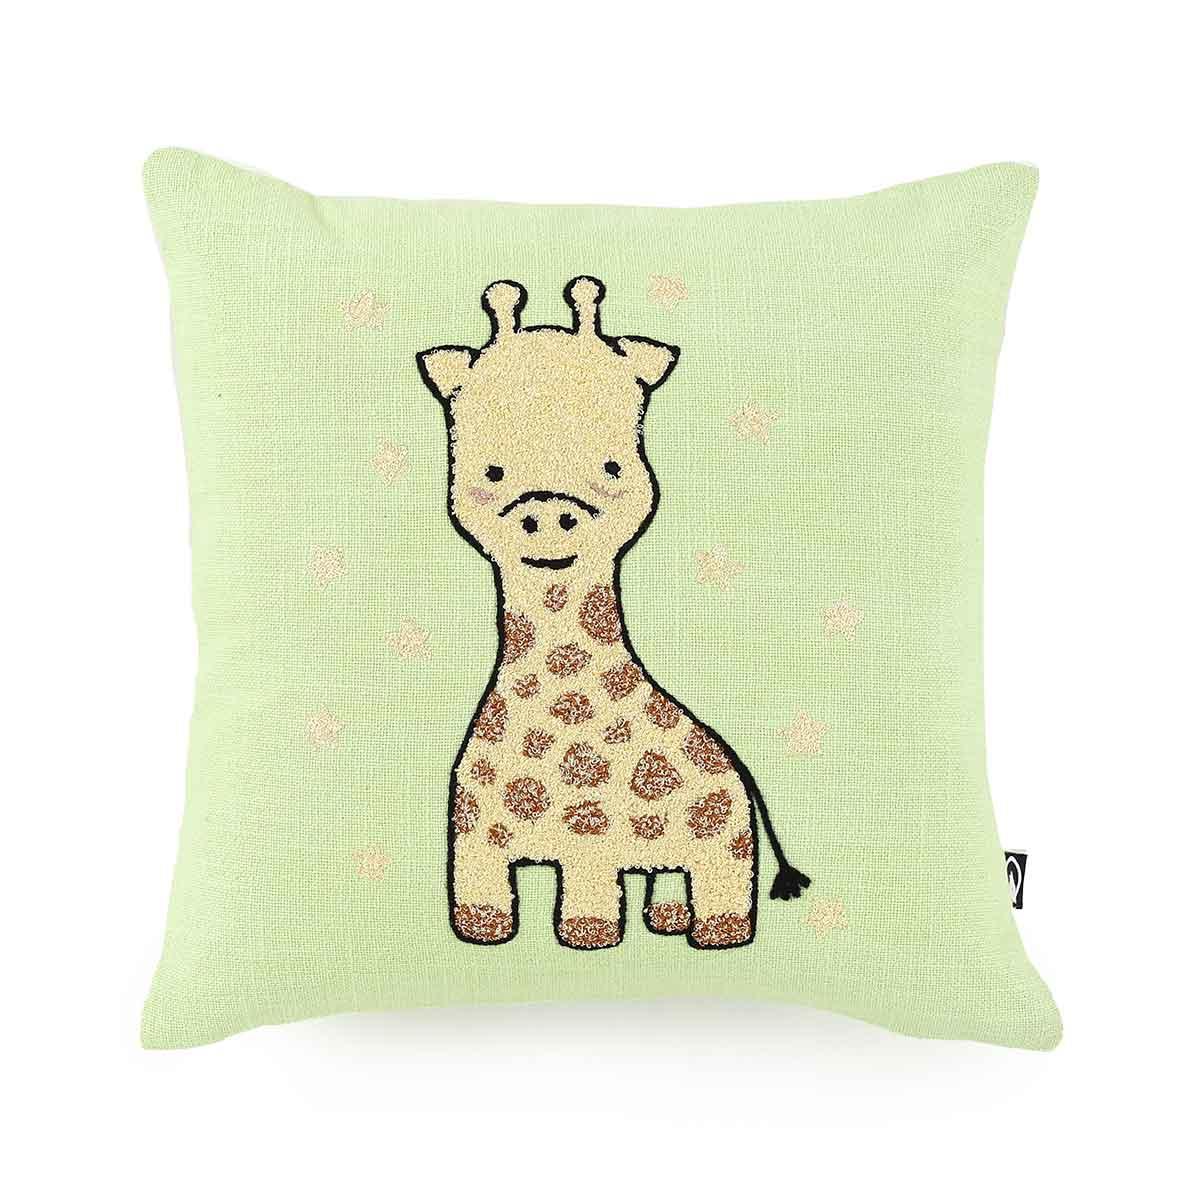 Giraffe Embroidered Kids Cushion Cover - Home4u